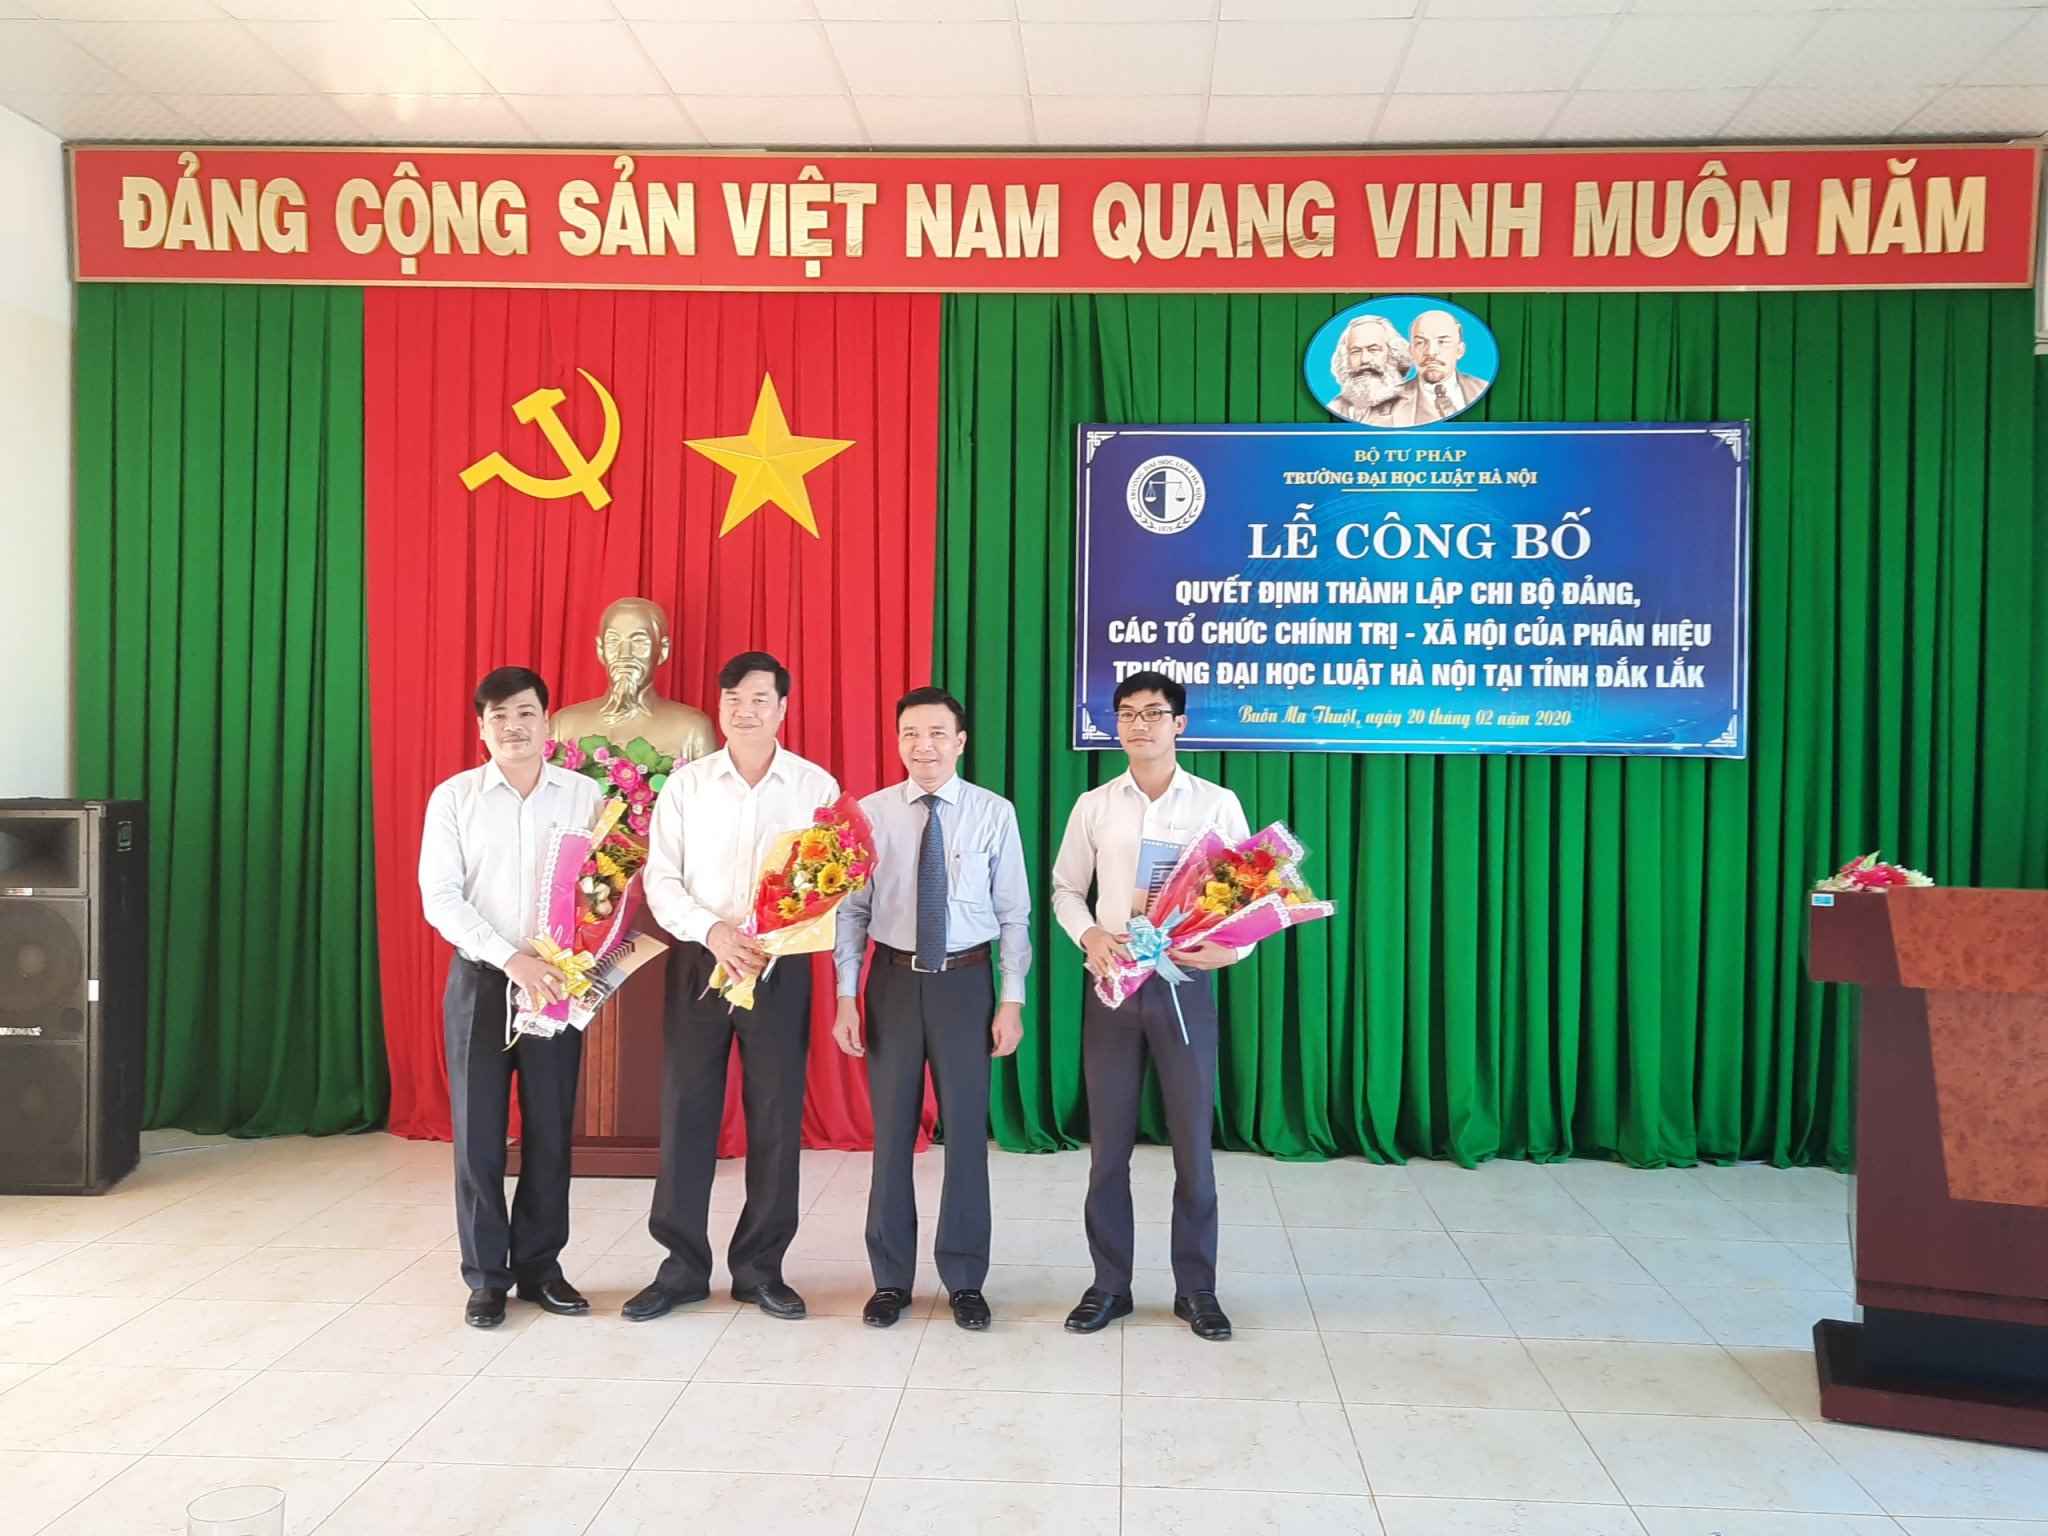 Công bố quyết định thành lập Chi bộ Đảng và các tổ chức chính trị - xã hội của Phân hiệu Trường Đại học Luật Hà Nội tại tỉnh Đắk Lắk